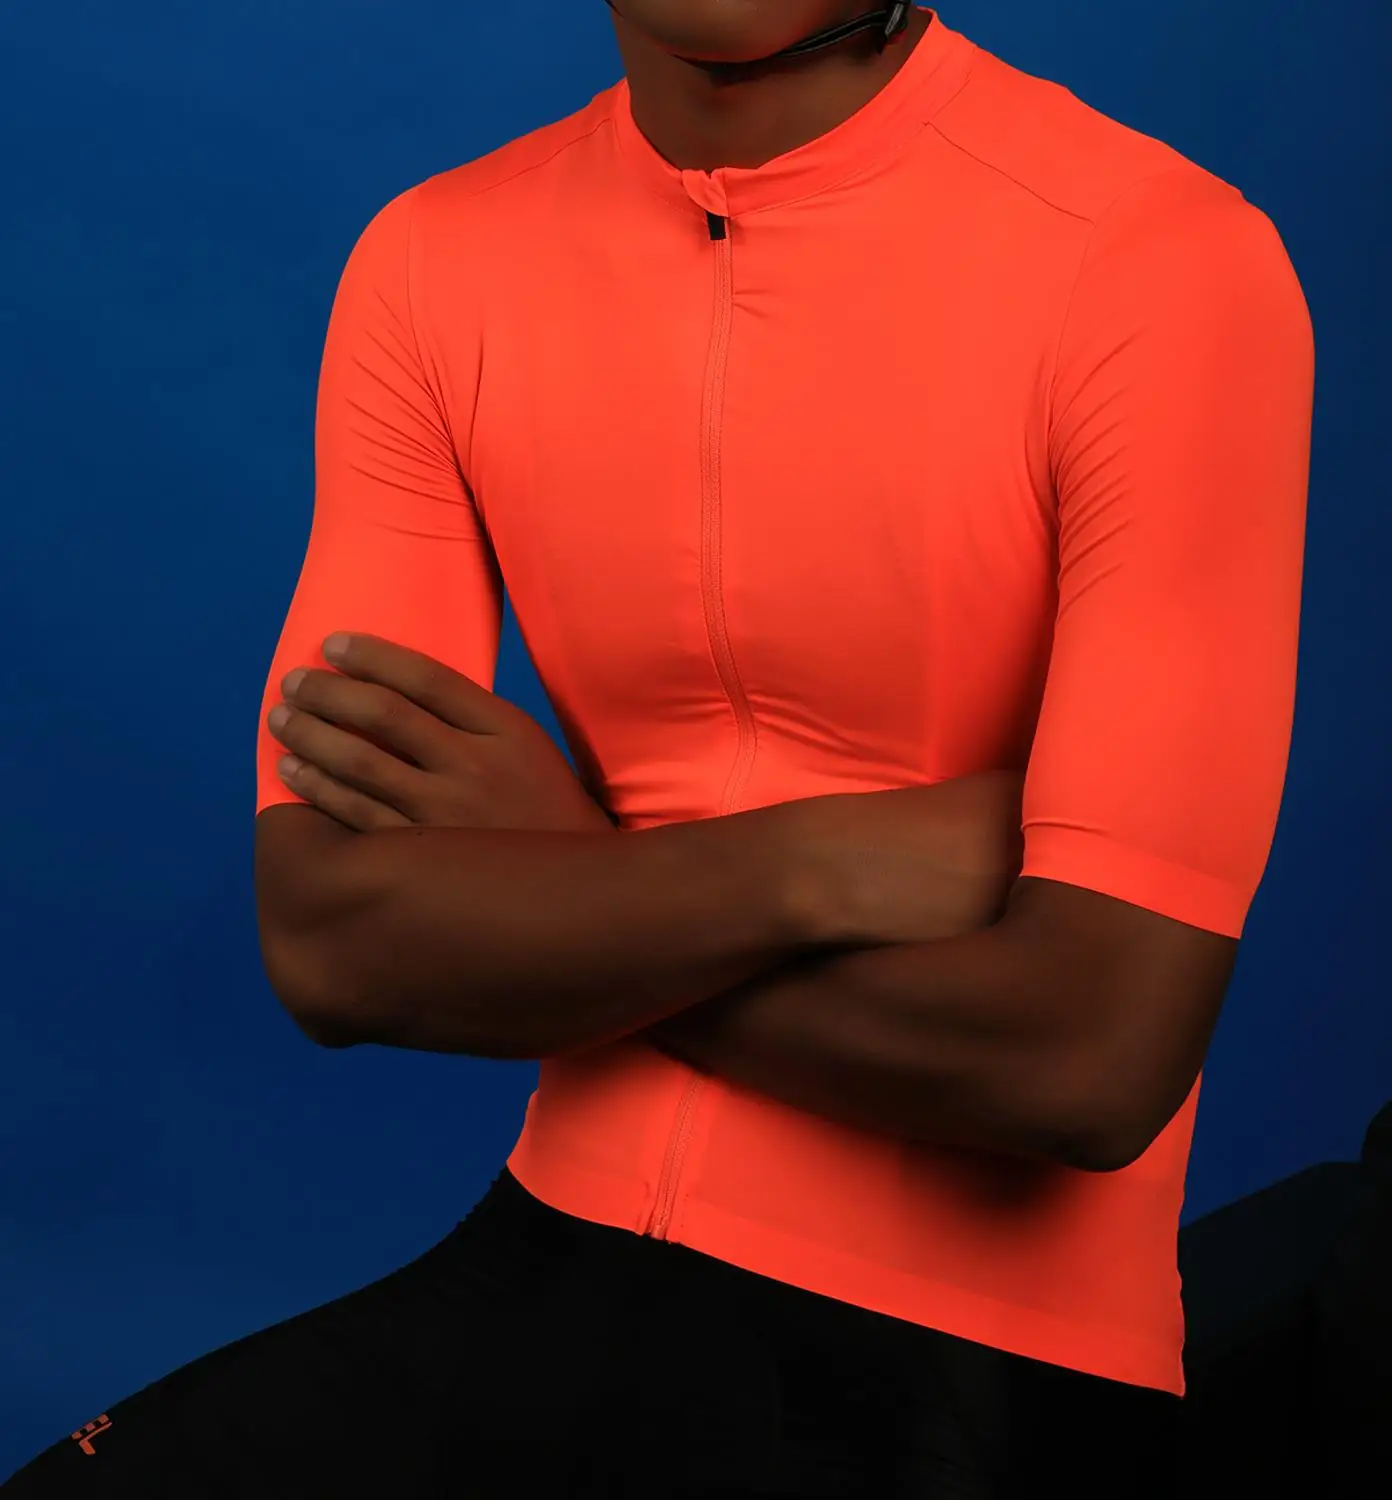 SPEXCEL 2018 новый яркий оранжевый одежда высшего качества короткий рукав Велоспорт Джерси pro team aero cut с новейшими бесшовные процесс дорога mtb